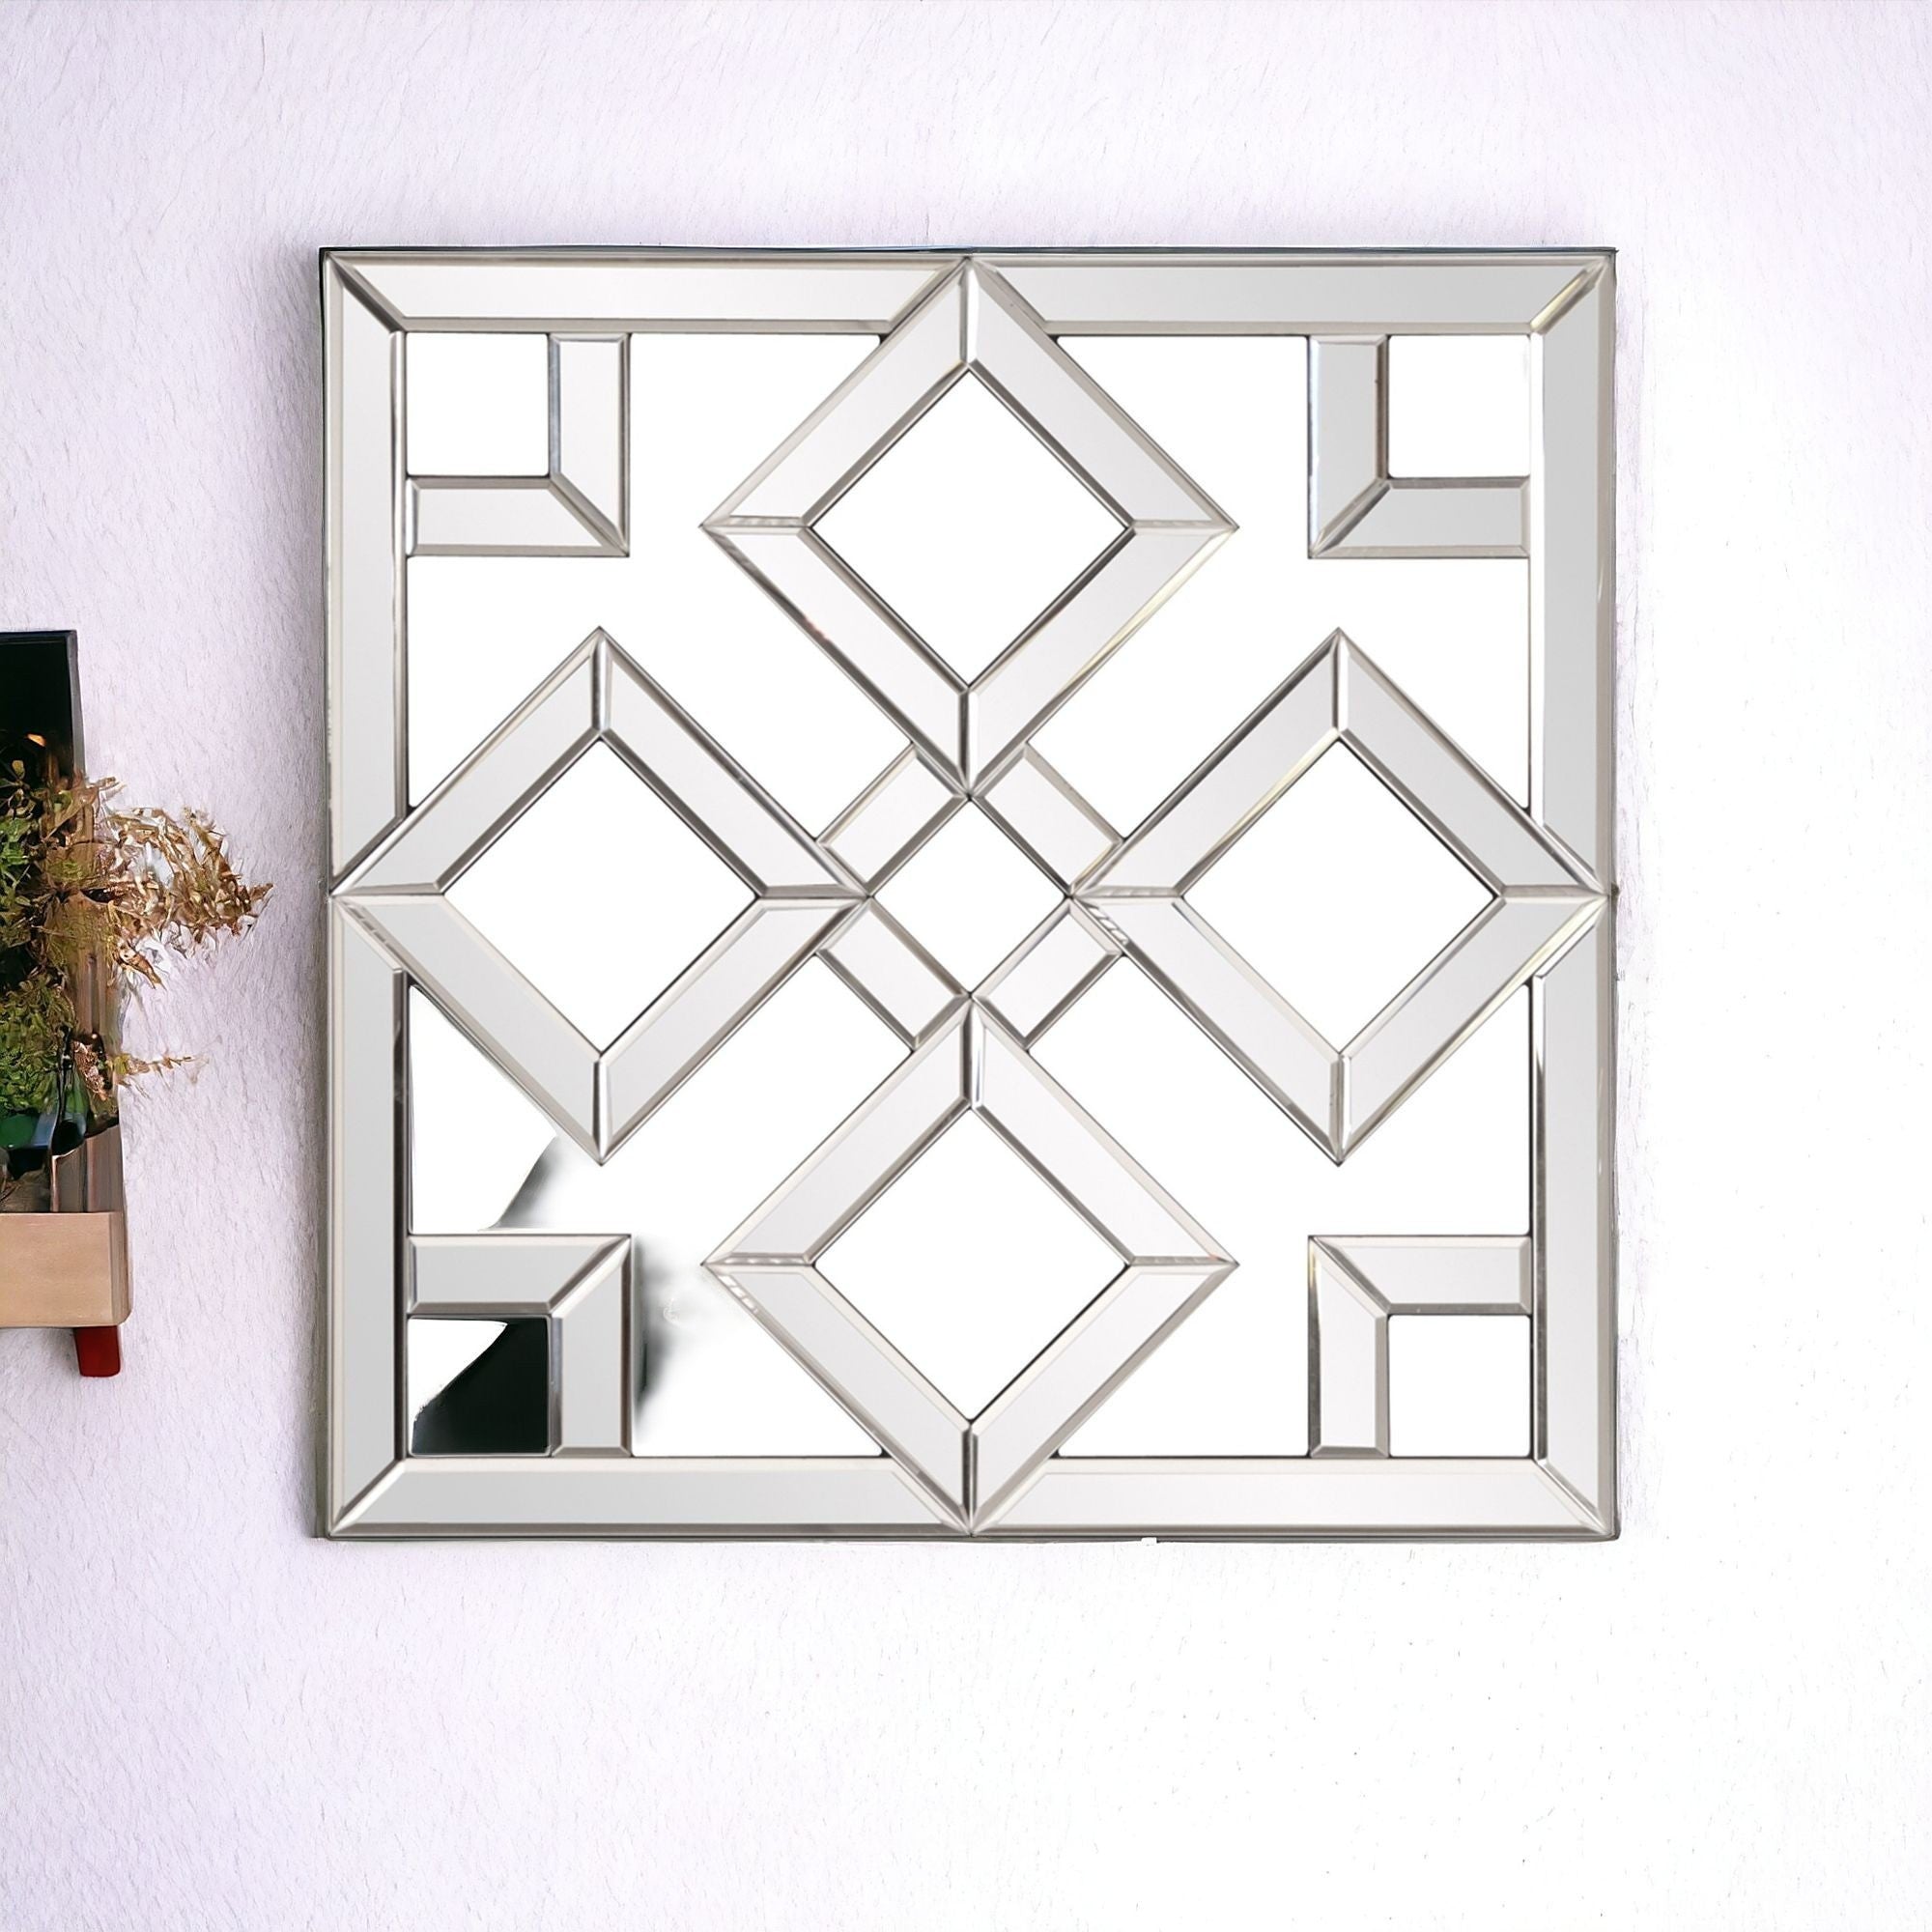 Interlocking Mirrored Squares With Lattice Design